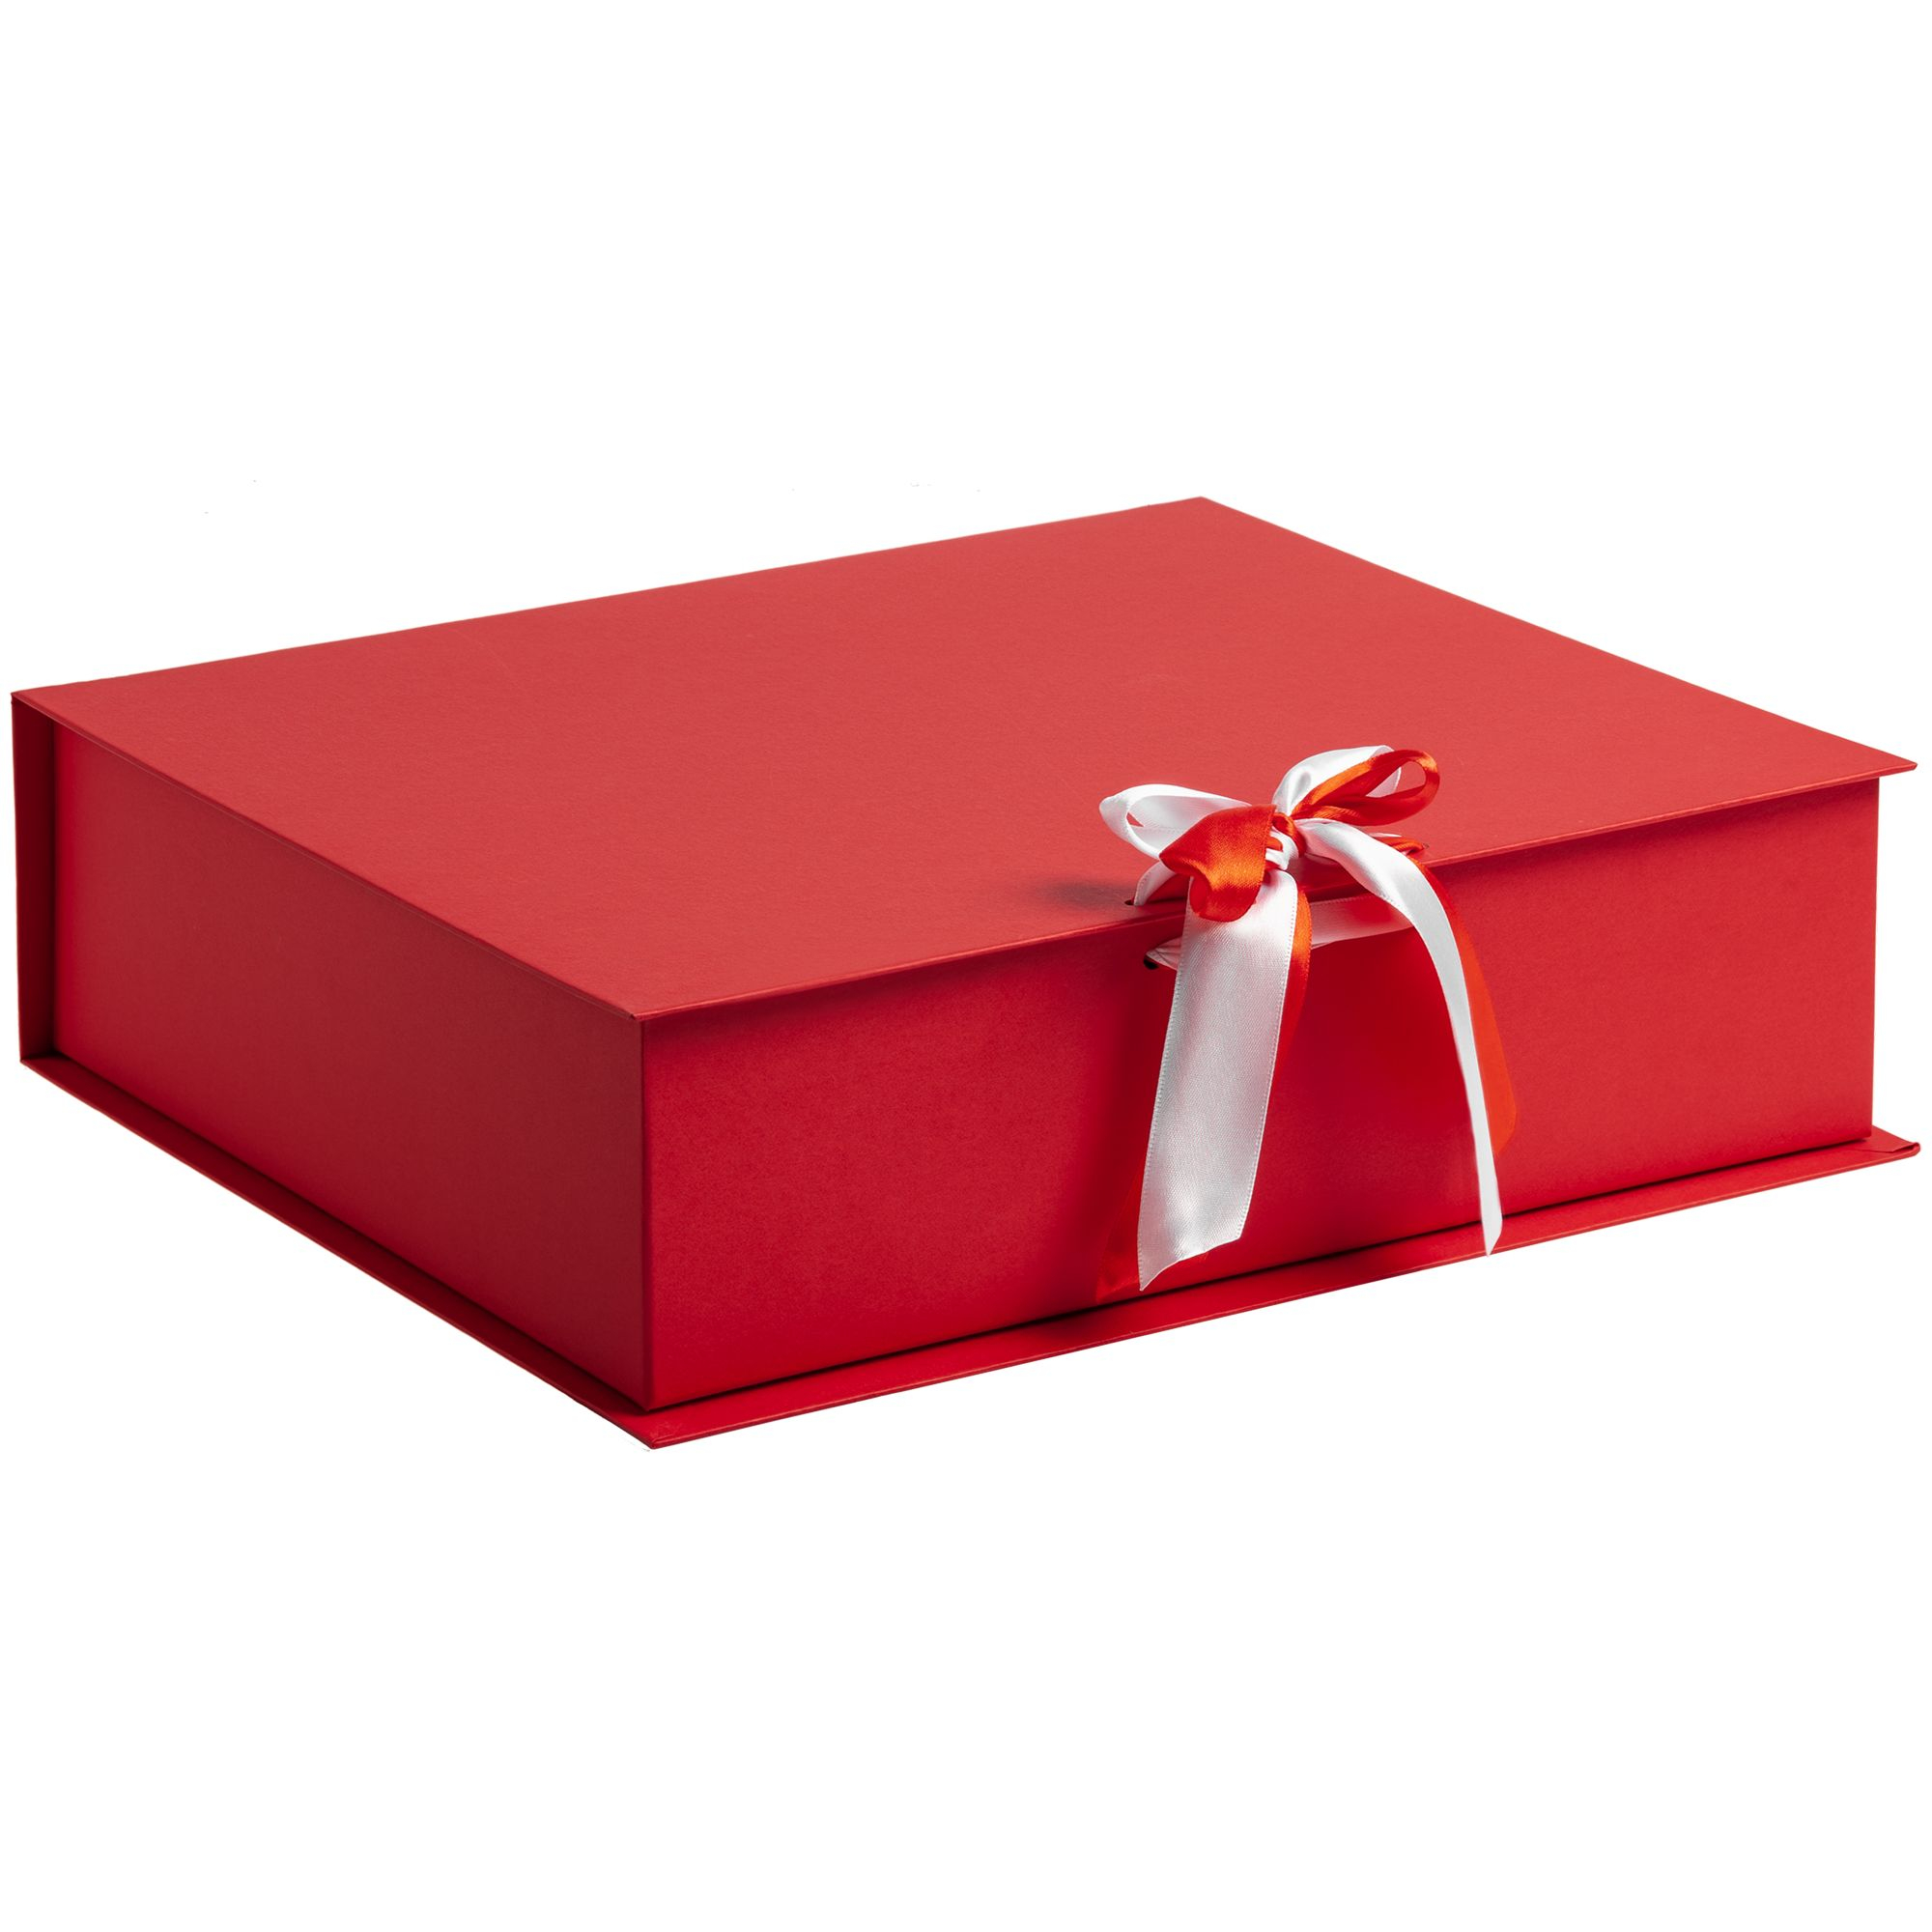 Купить красивые коробку. Подарочная коробка. Коробка для подарка. Красивая подарочная коробка. Красивые коробочки для подарков.